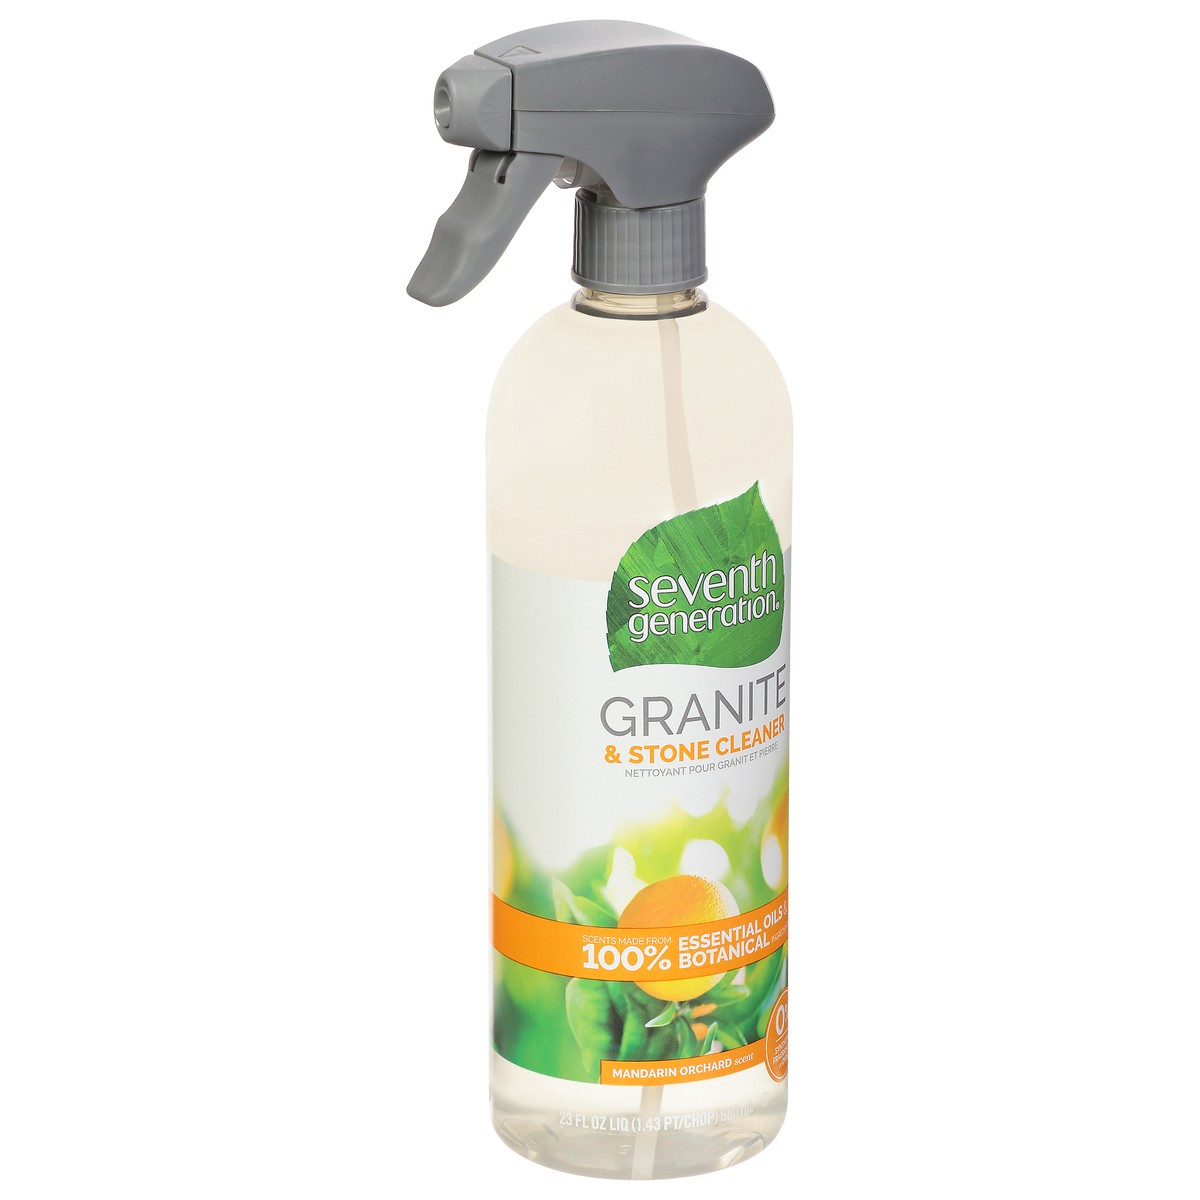 slide 6 of 9, Seventh Generation Granite Cleaner Mandarin Orchard scent, 23 oz, 23 oz